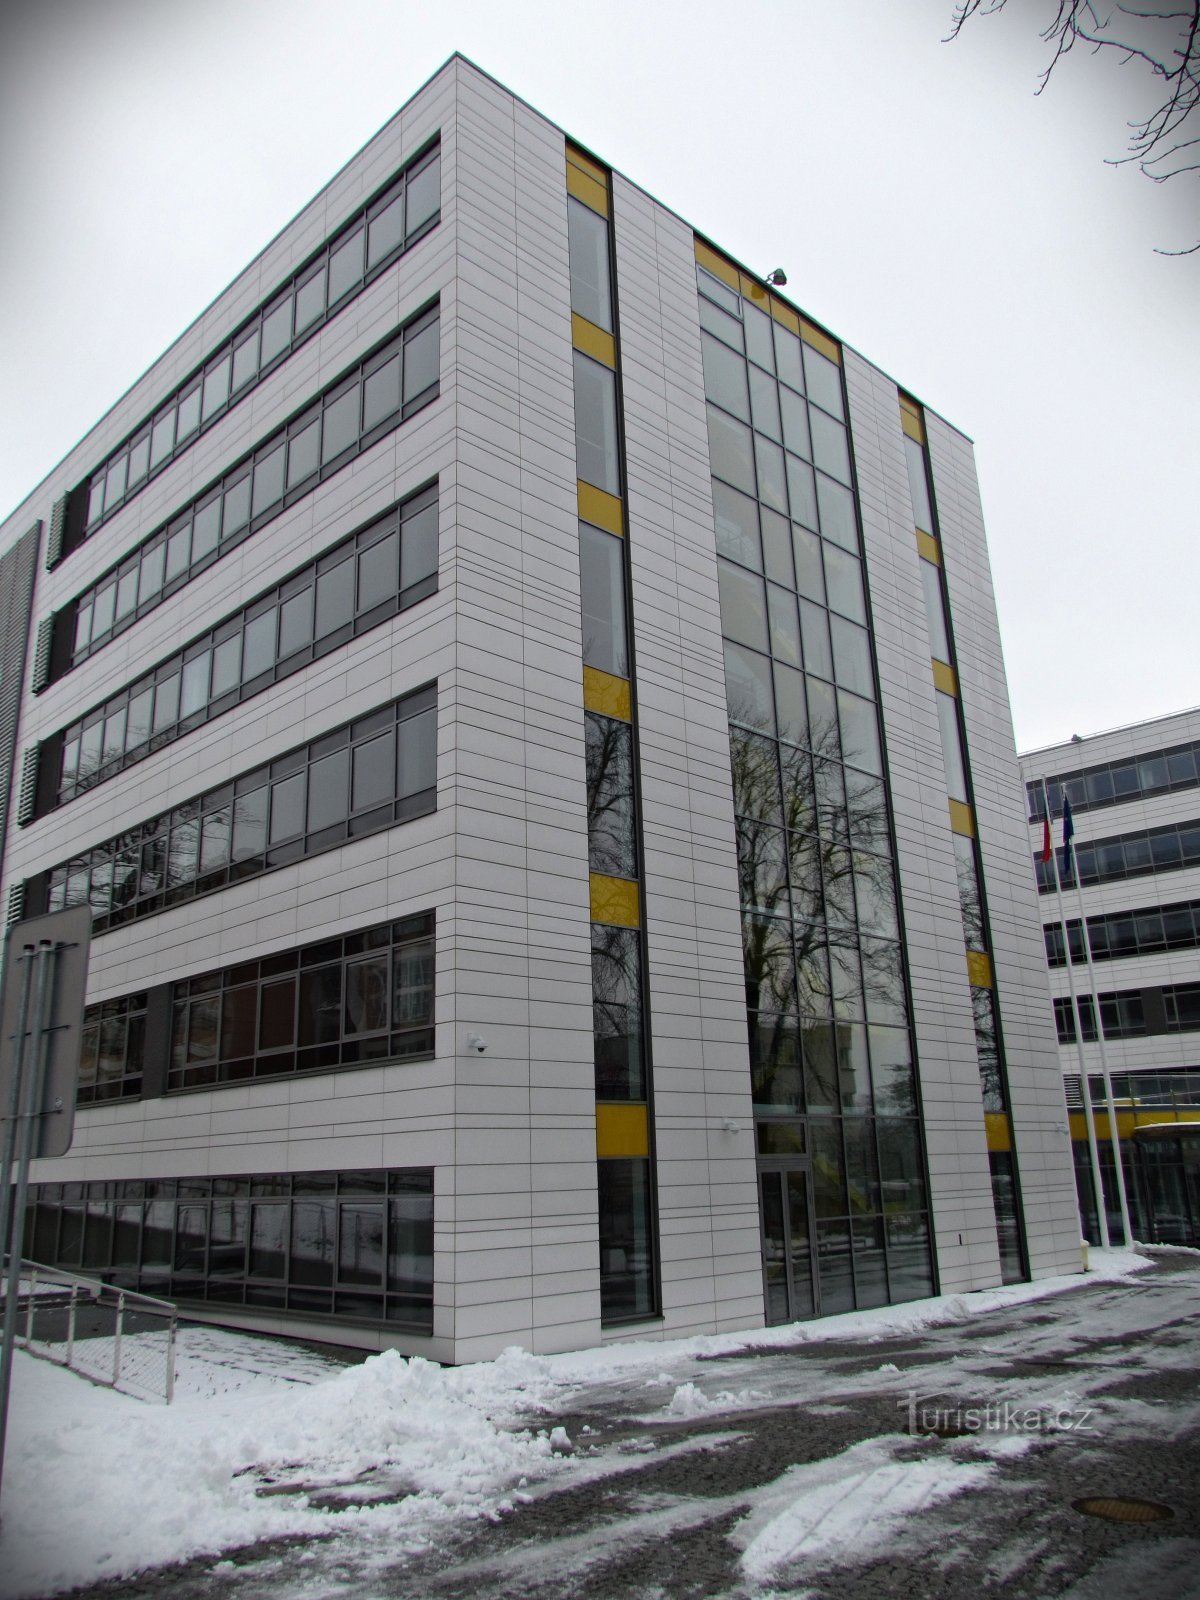 Zlín - tòa nhà mới của UTB